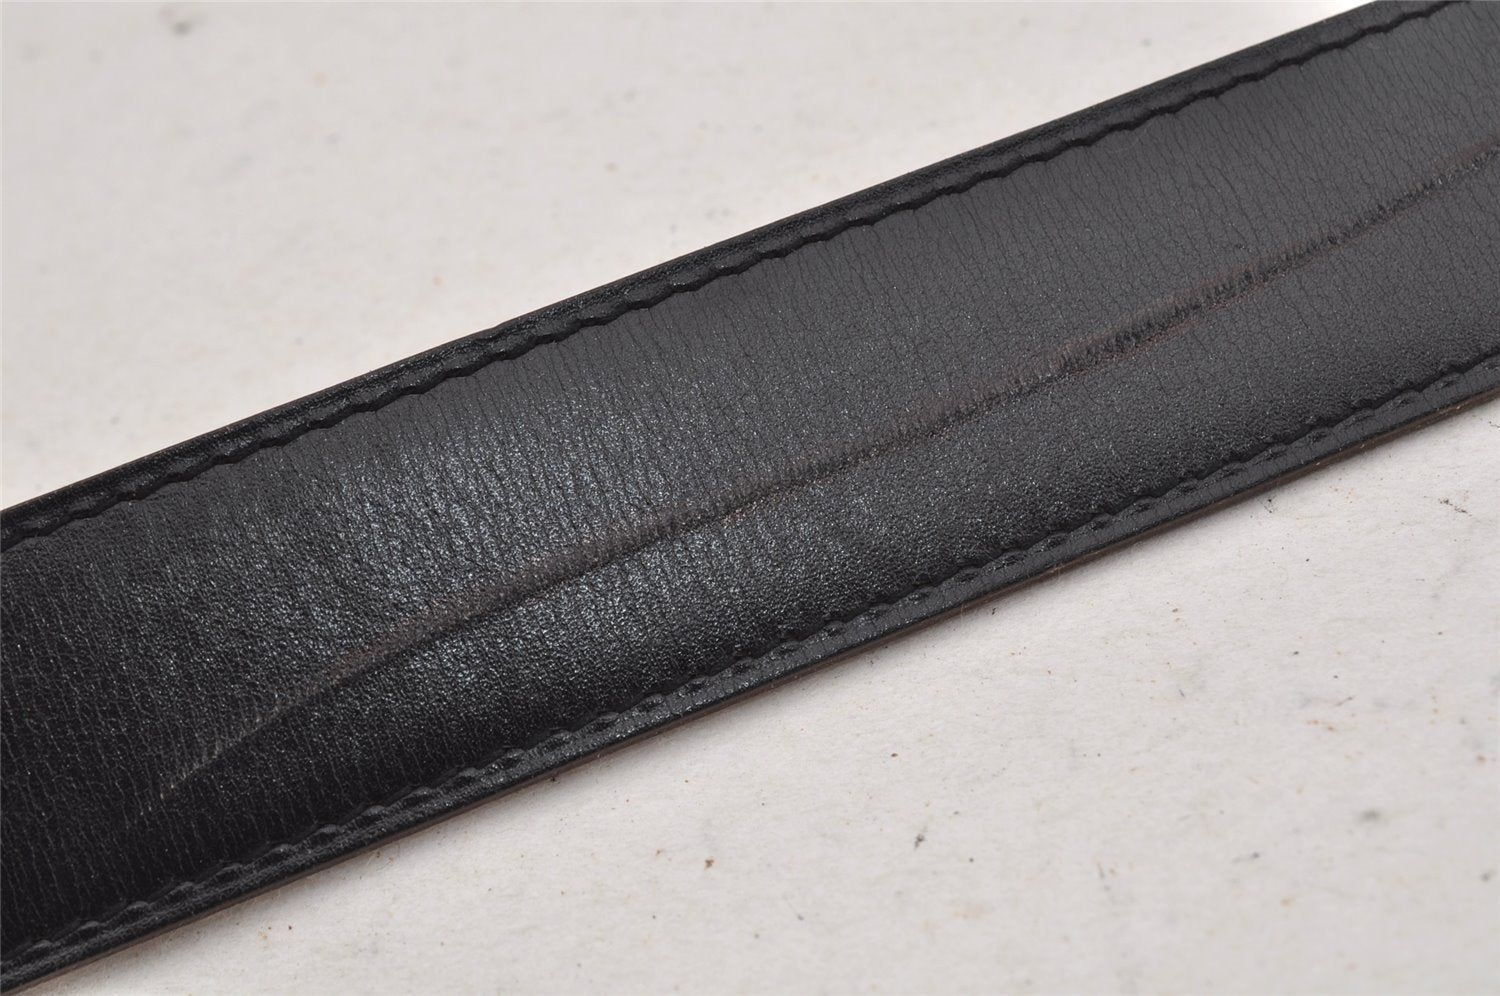 Authentic HERMES Constance Leather Belt Size 80cm 31.5